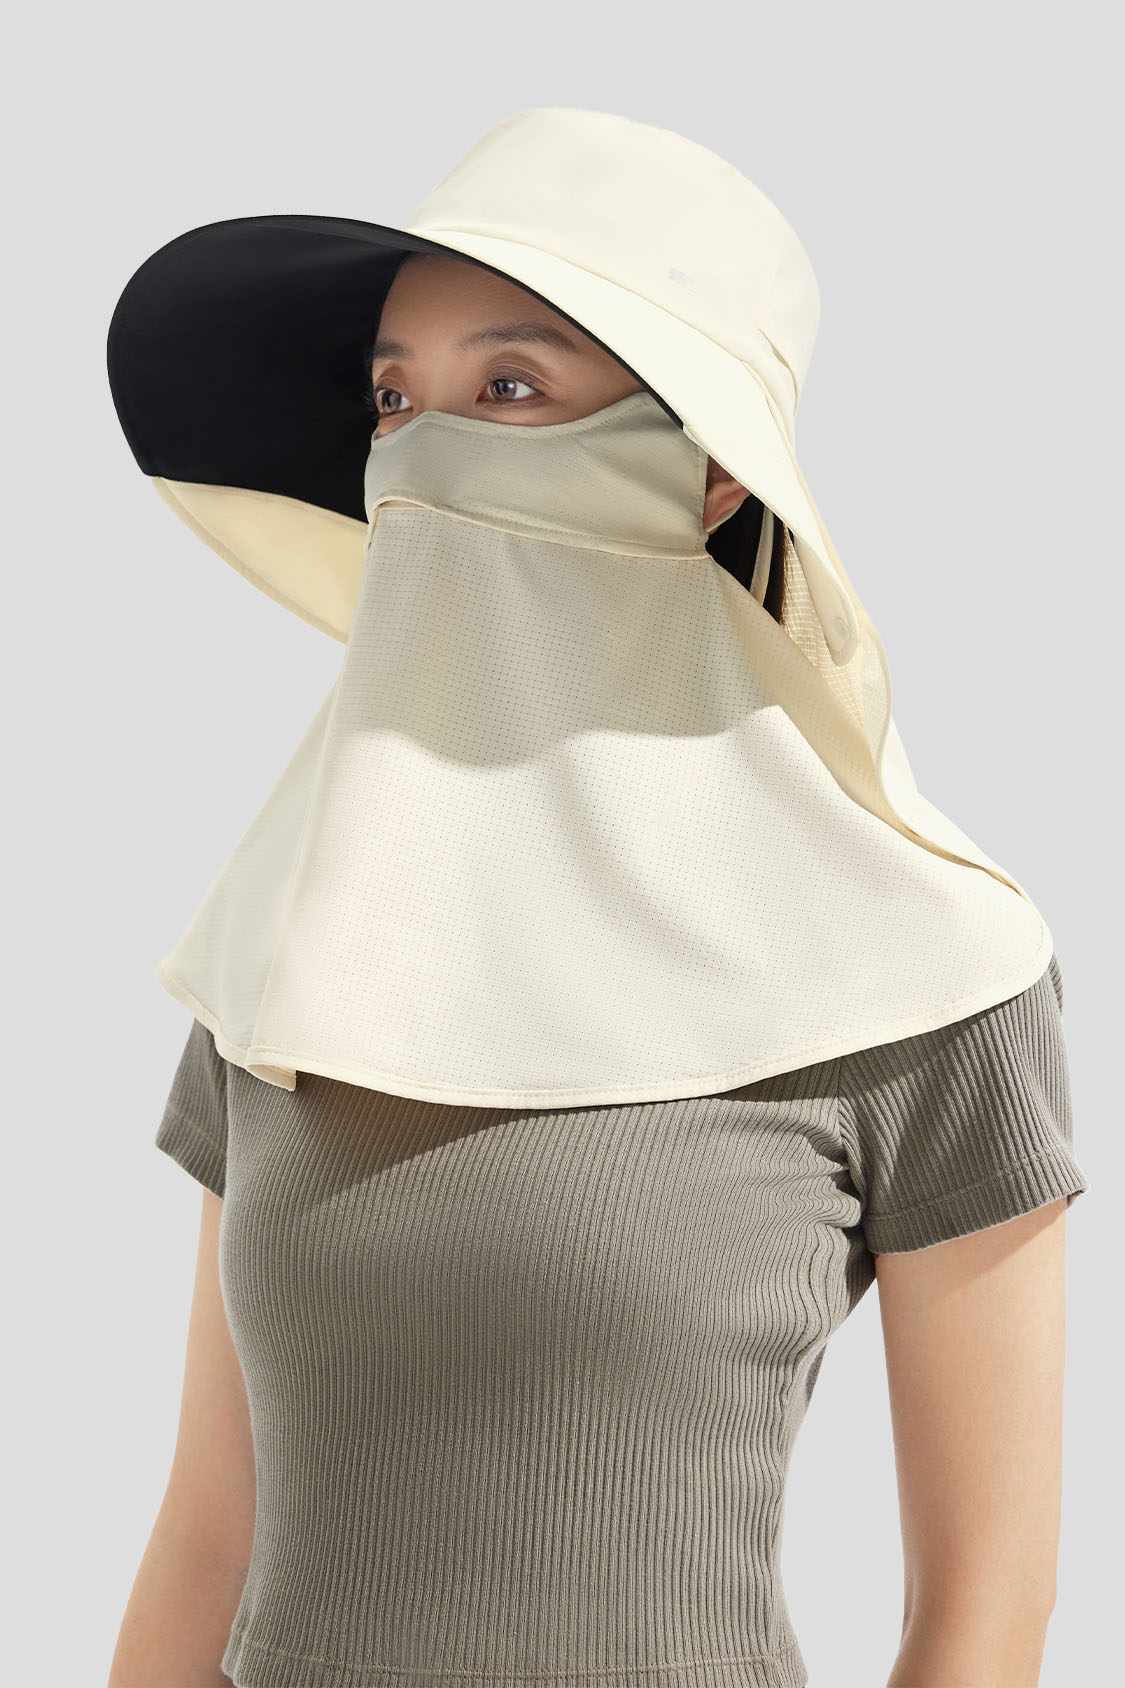 beneunder women's outdoor full coverage hat UPF 50+ color_white